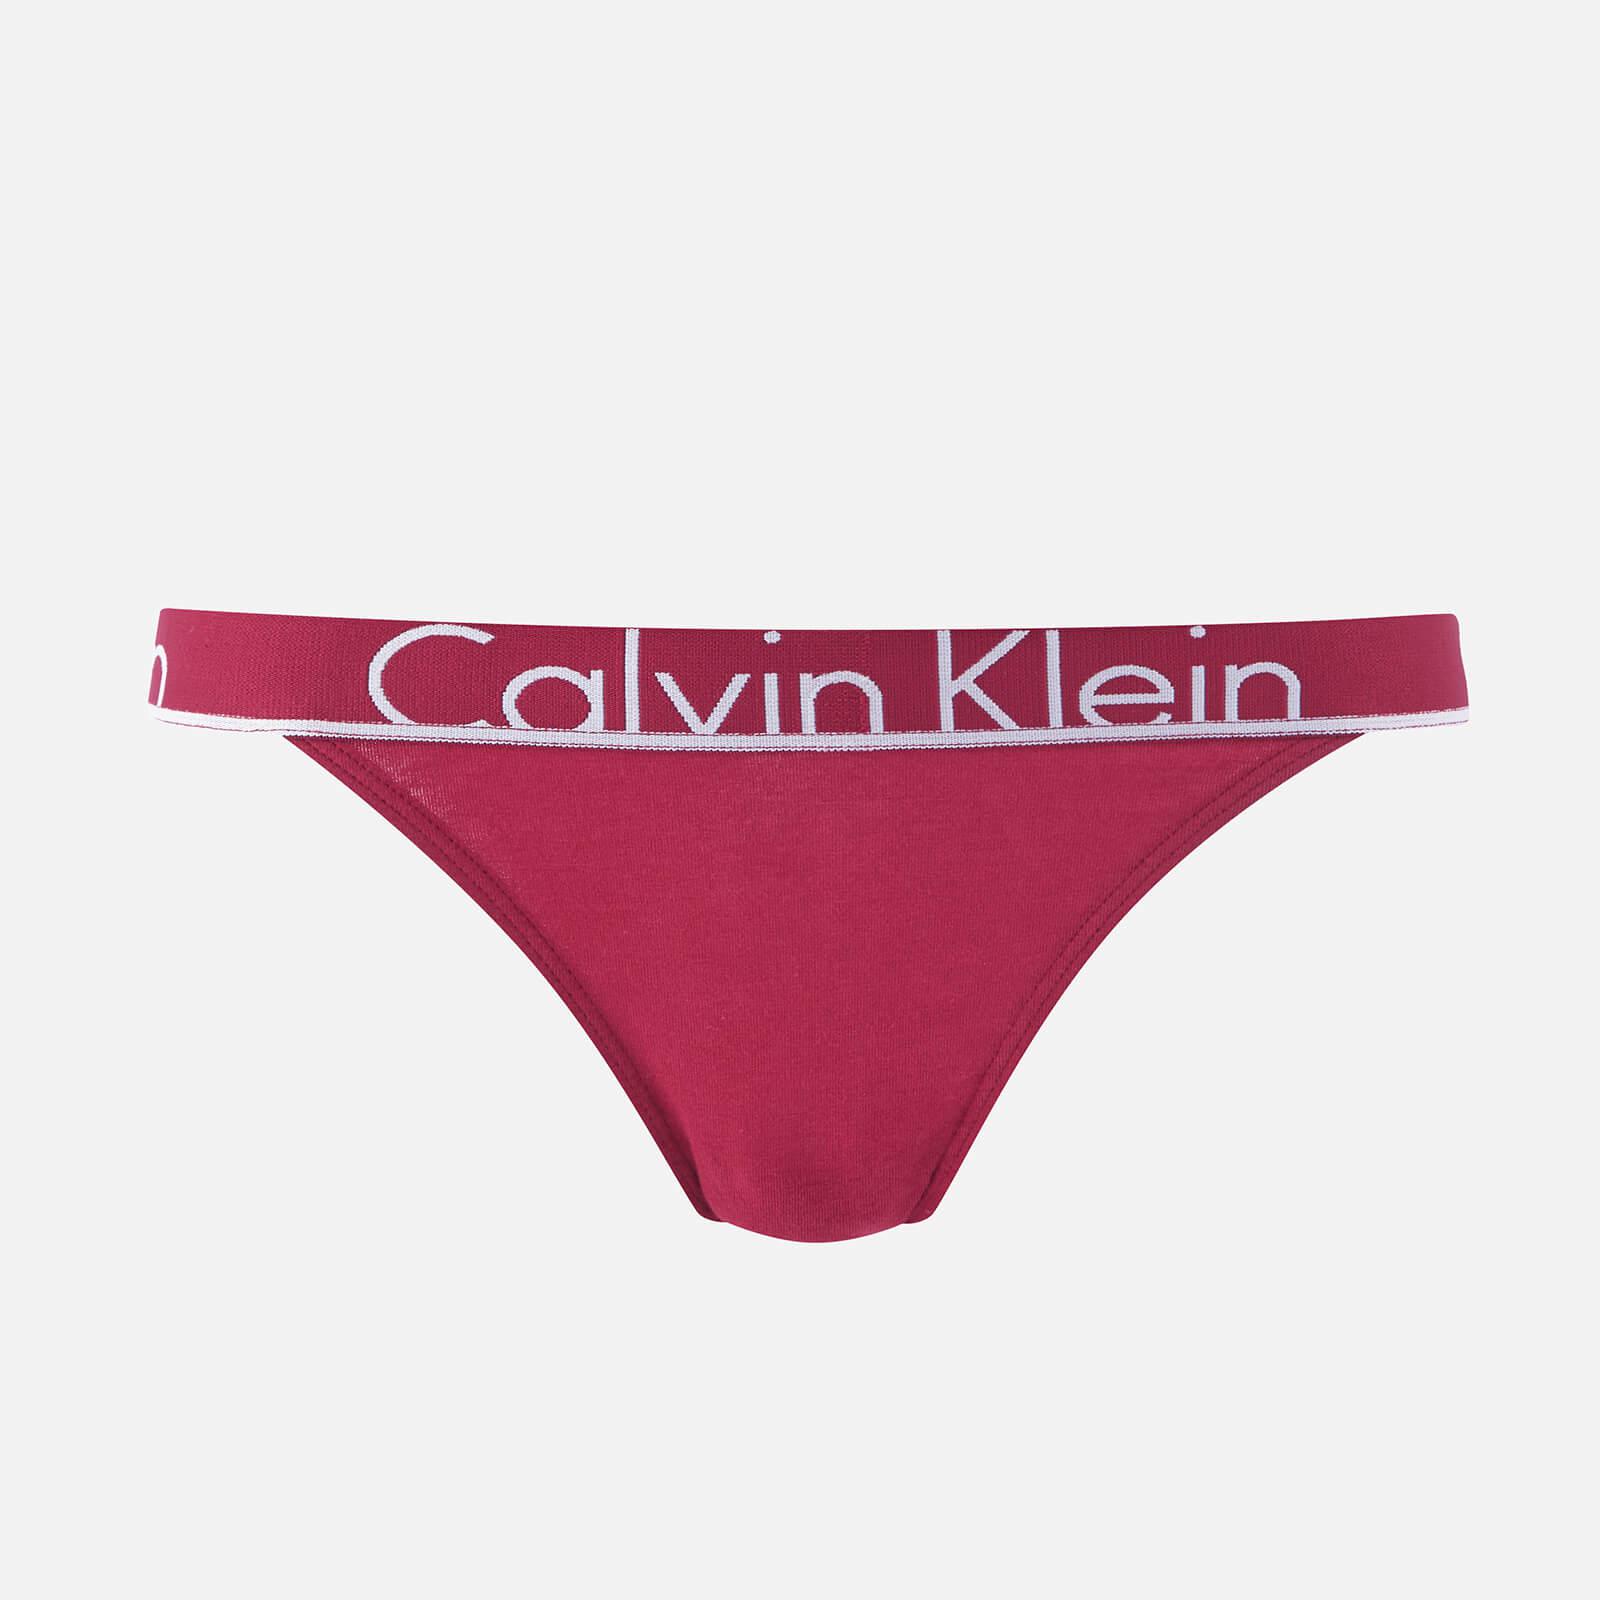 calvin klein red underwear set